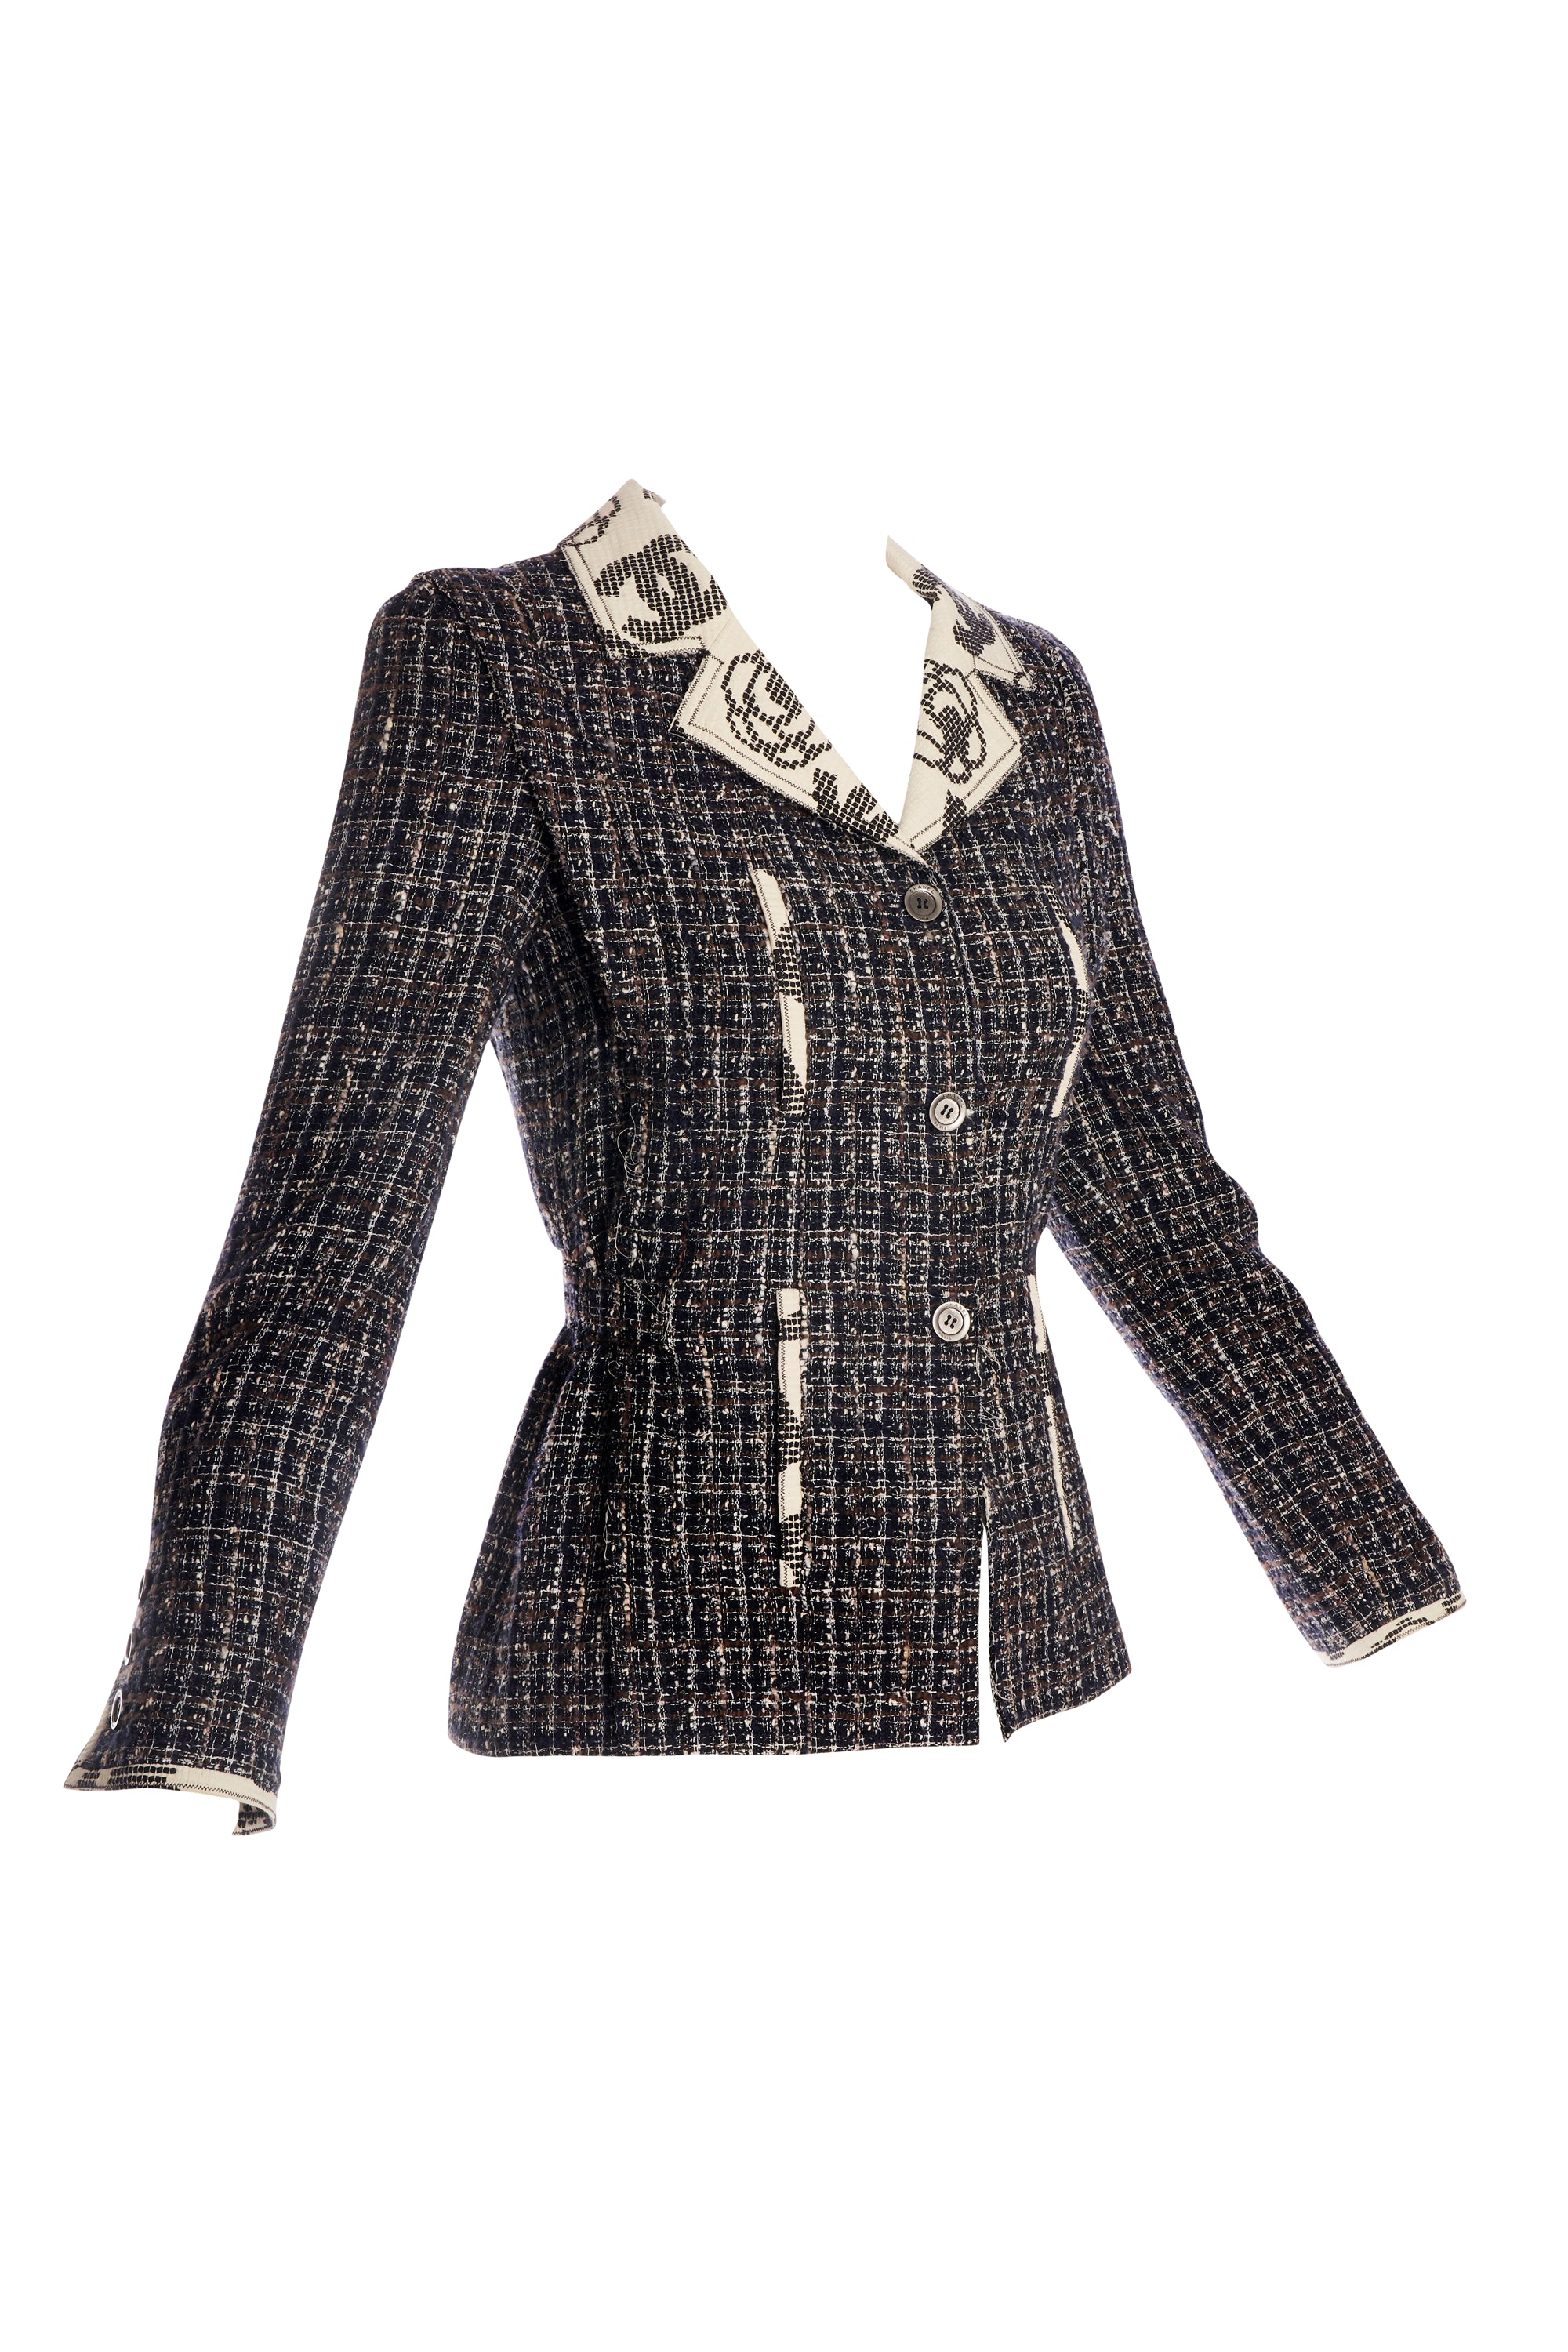 Chanel Grey Tweed Jacket 2006 Size 36